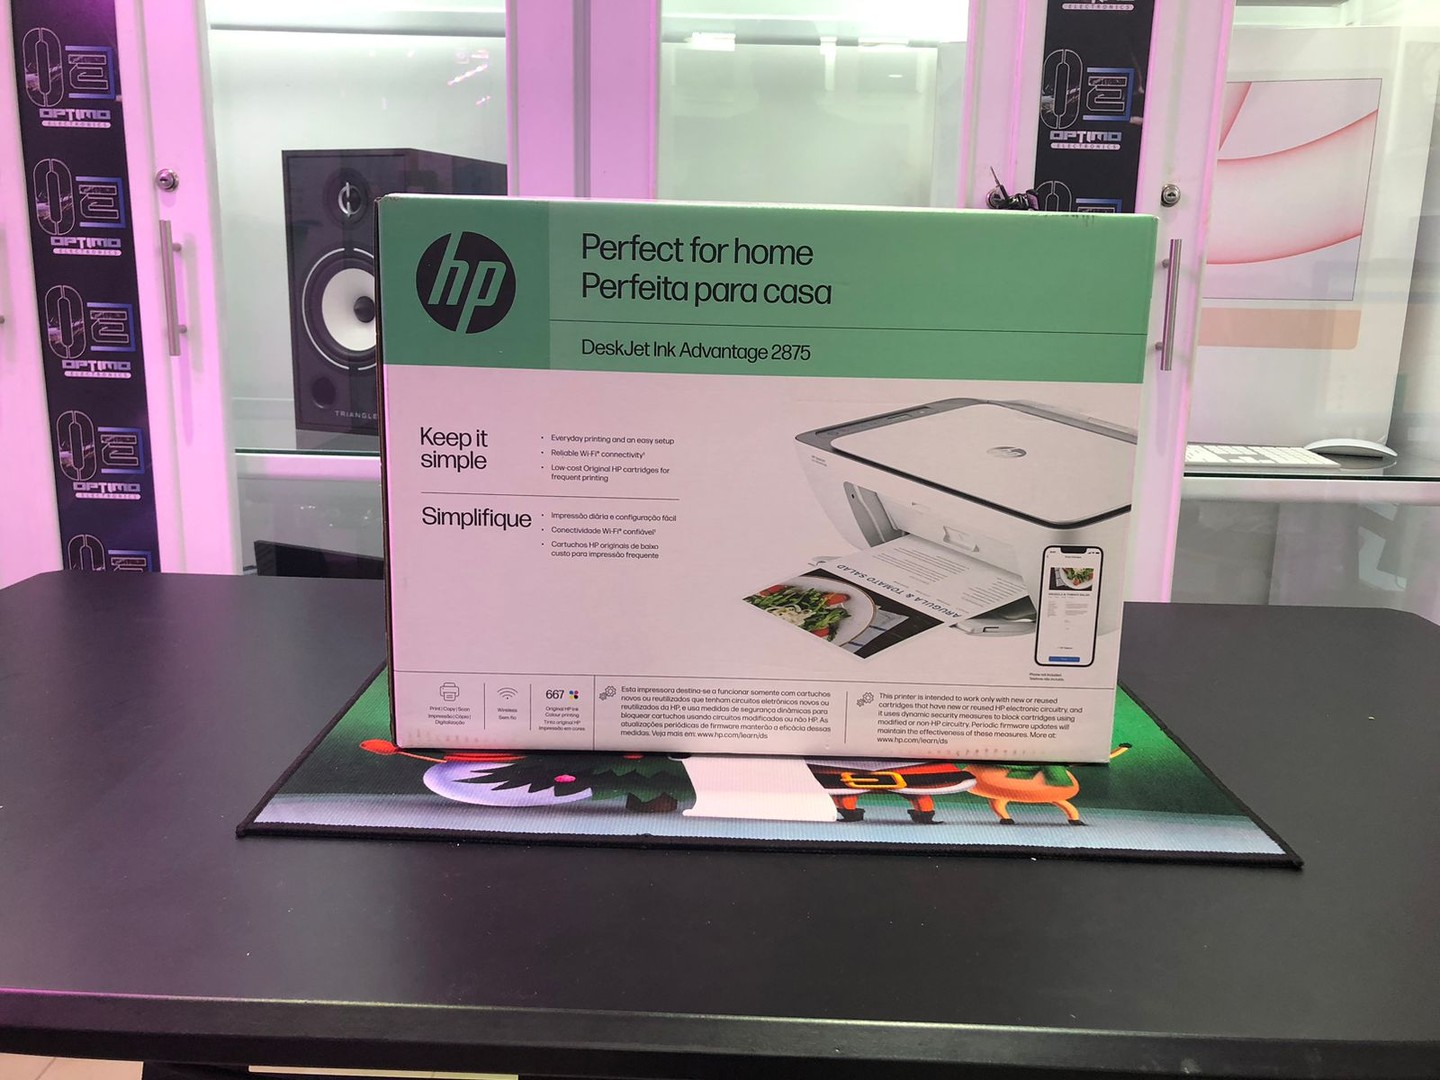 impresoras y scanners - Impresora Multifunción a wifi y Bluetooth HP 2875 Todo en 1, Nueva y Sellada 0